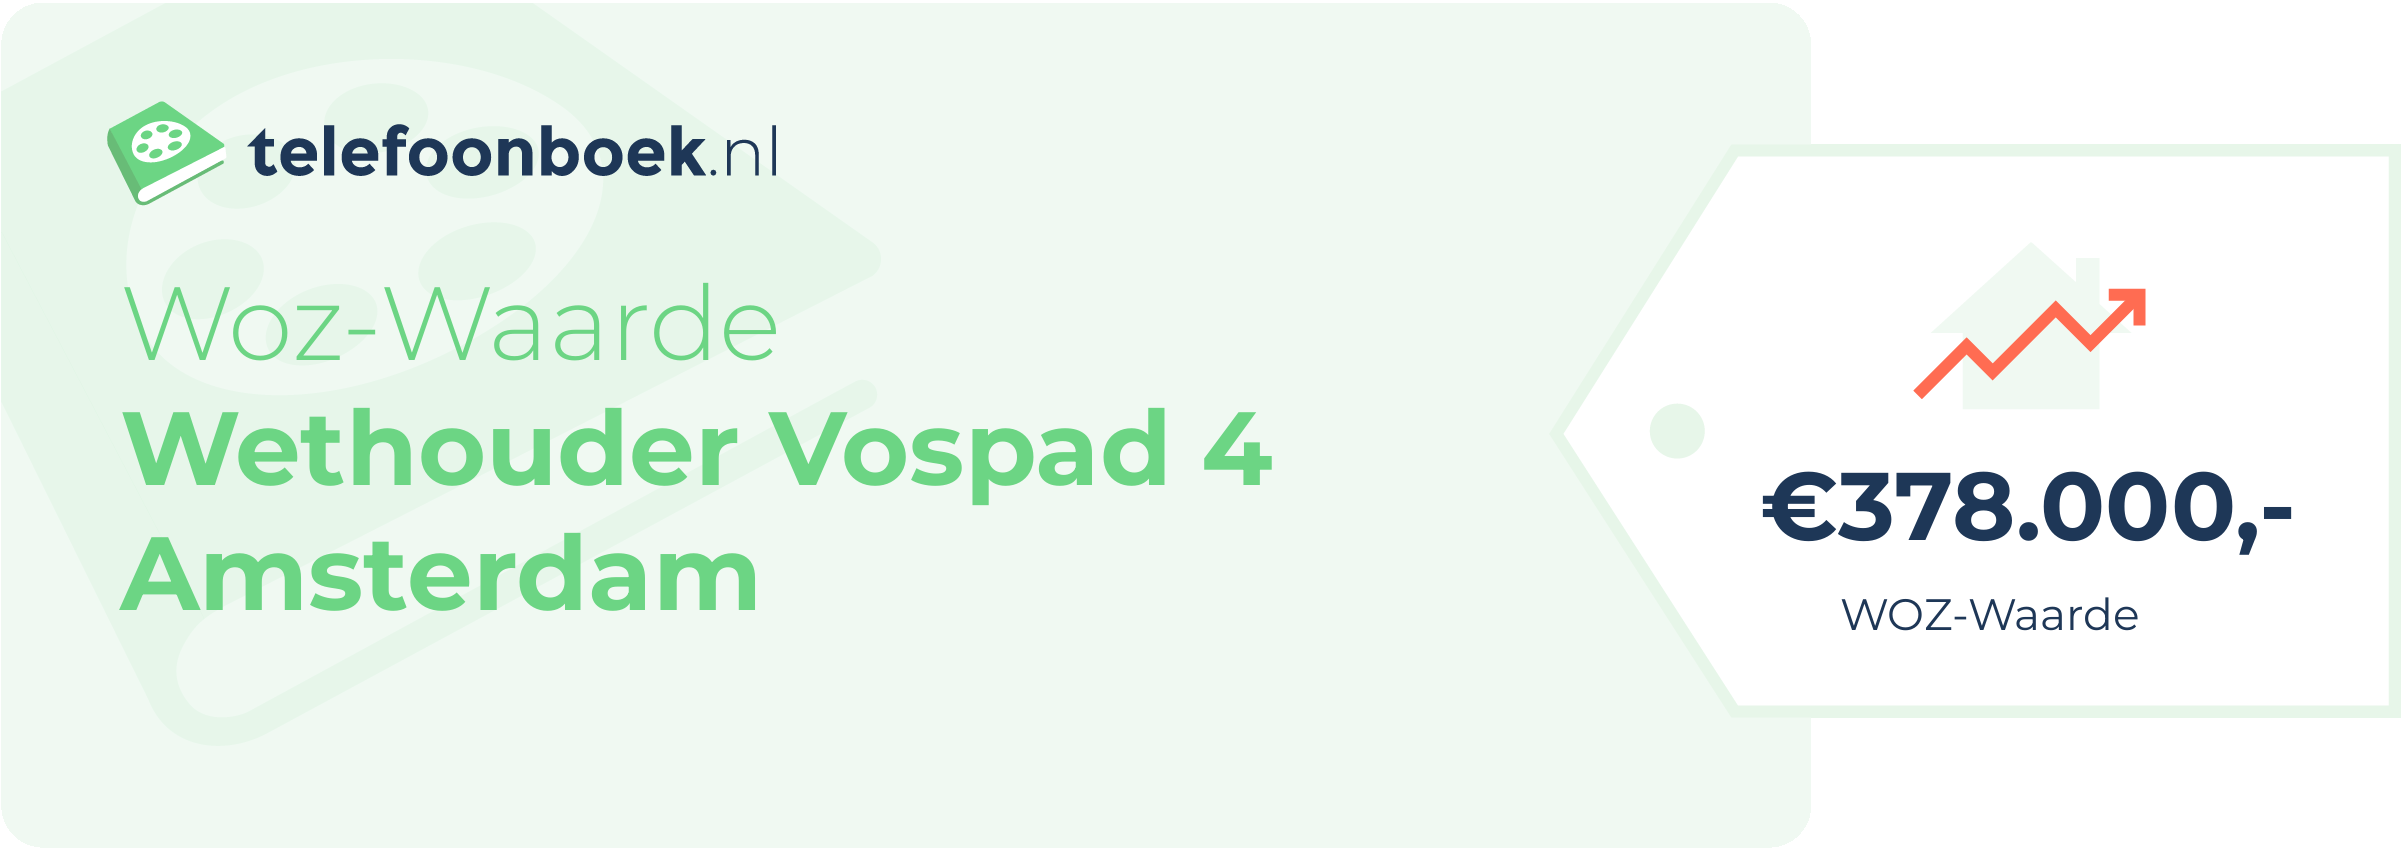 WOZ-waarde Wethouder Vospad 4 Amsterdam